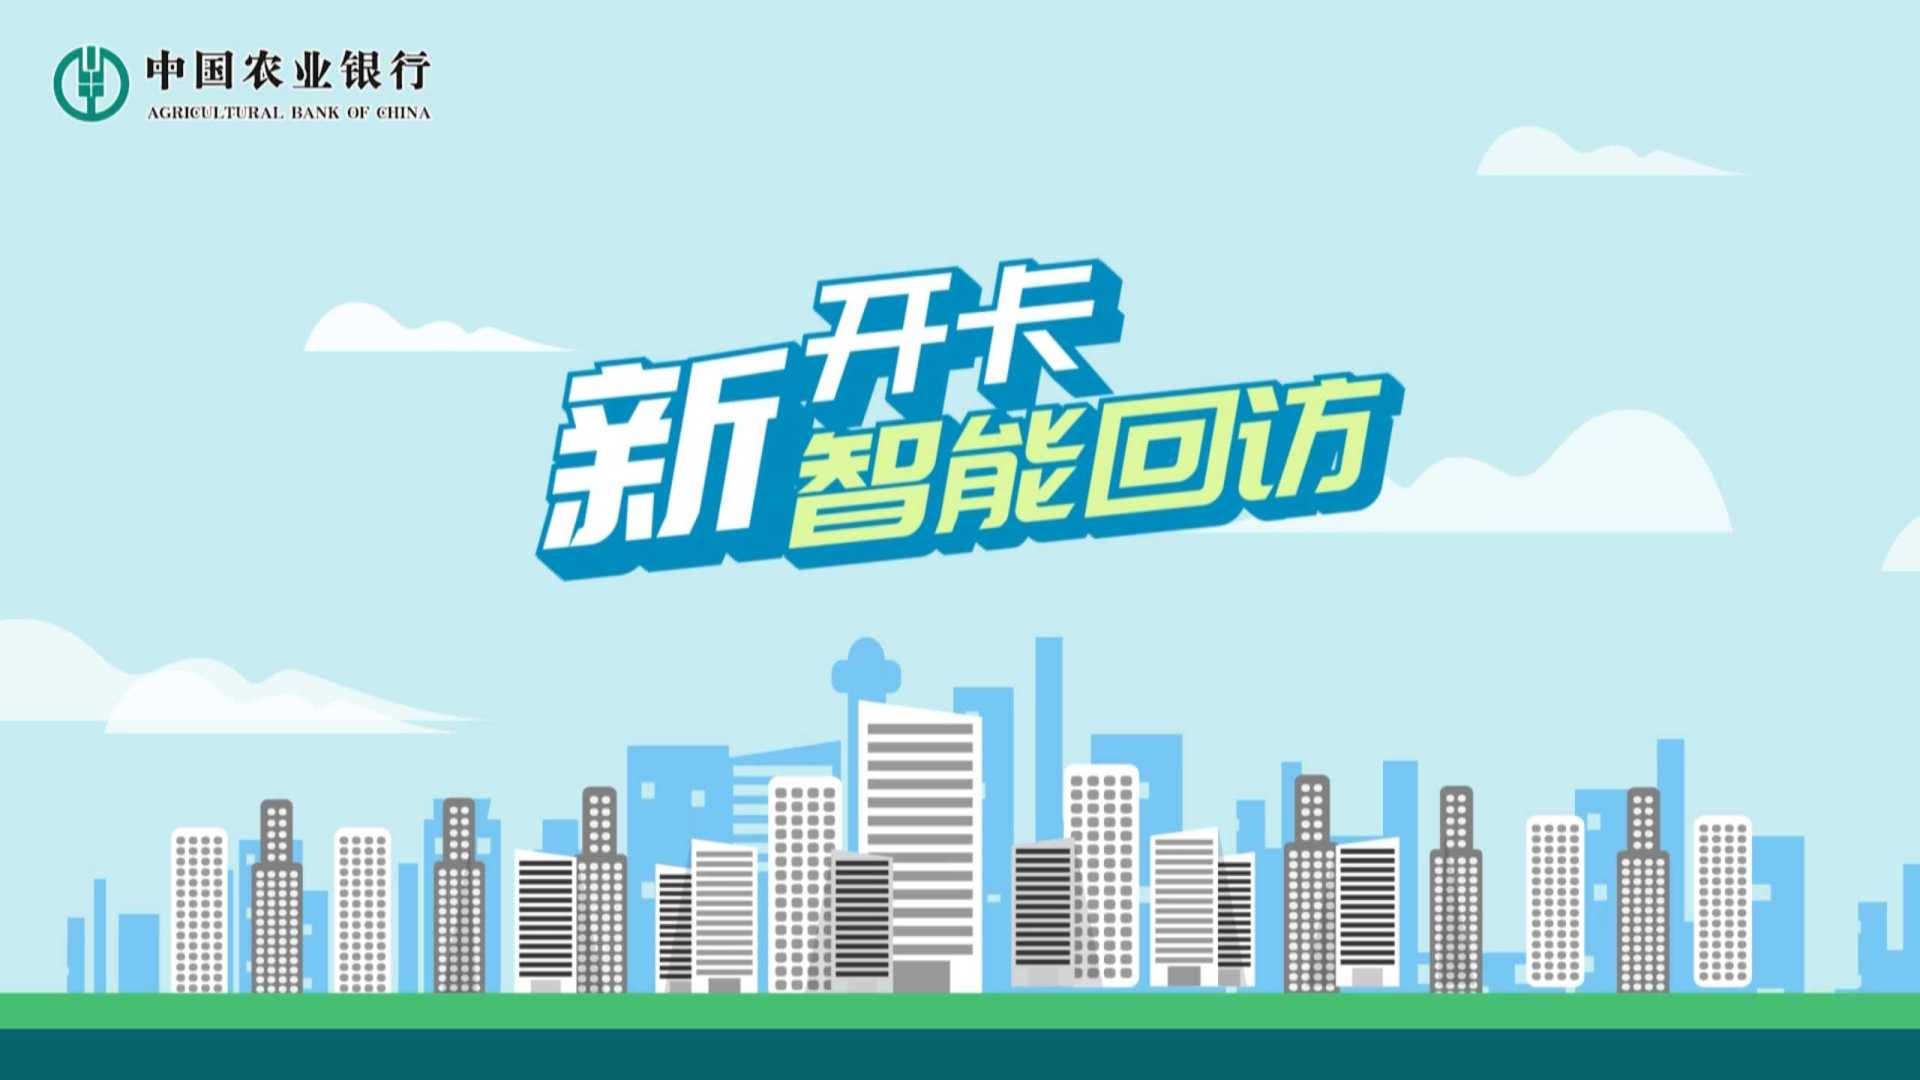 中国农业银行新开卡智能回访MG动画